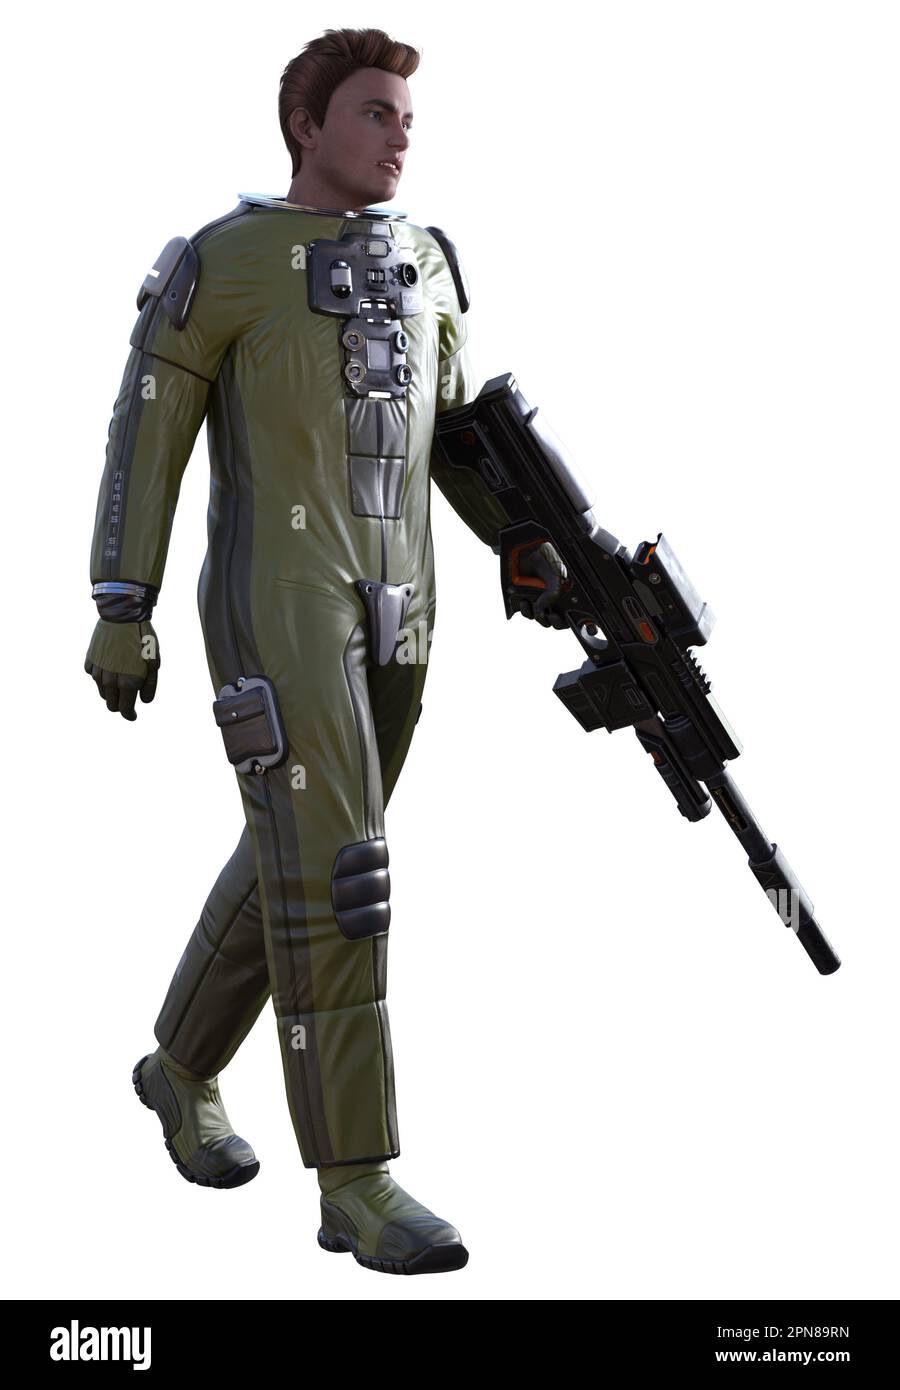 soldat de l'espace armé d'un fusil futuriste, rendu en 3d Banque D'Images